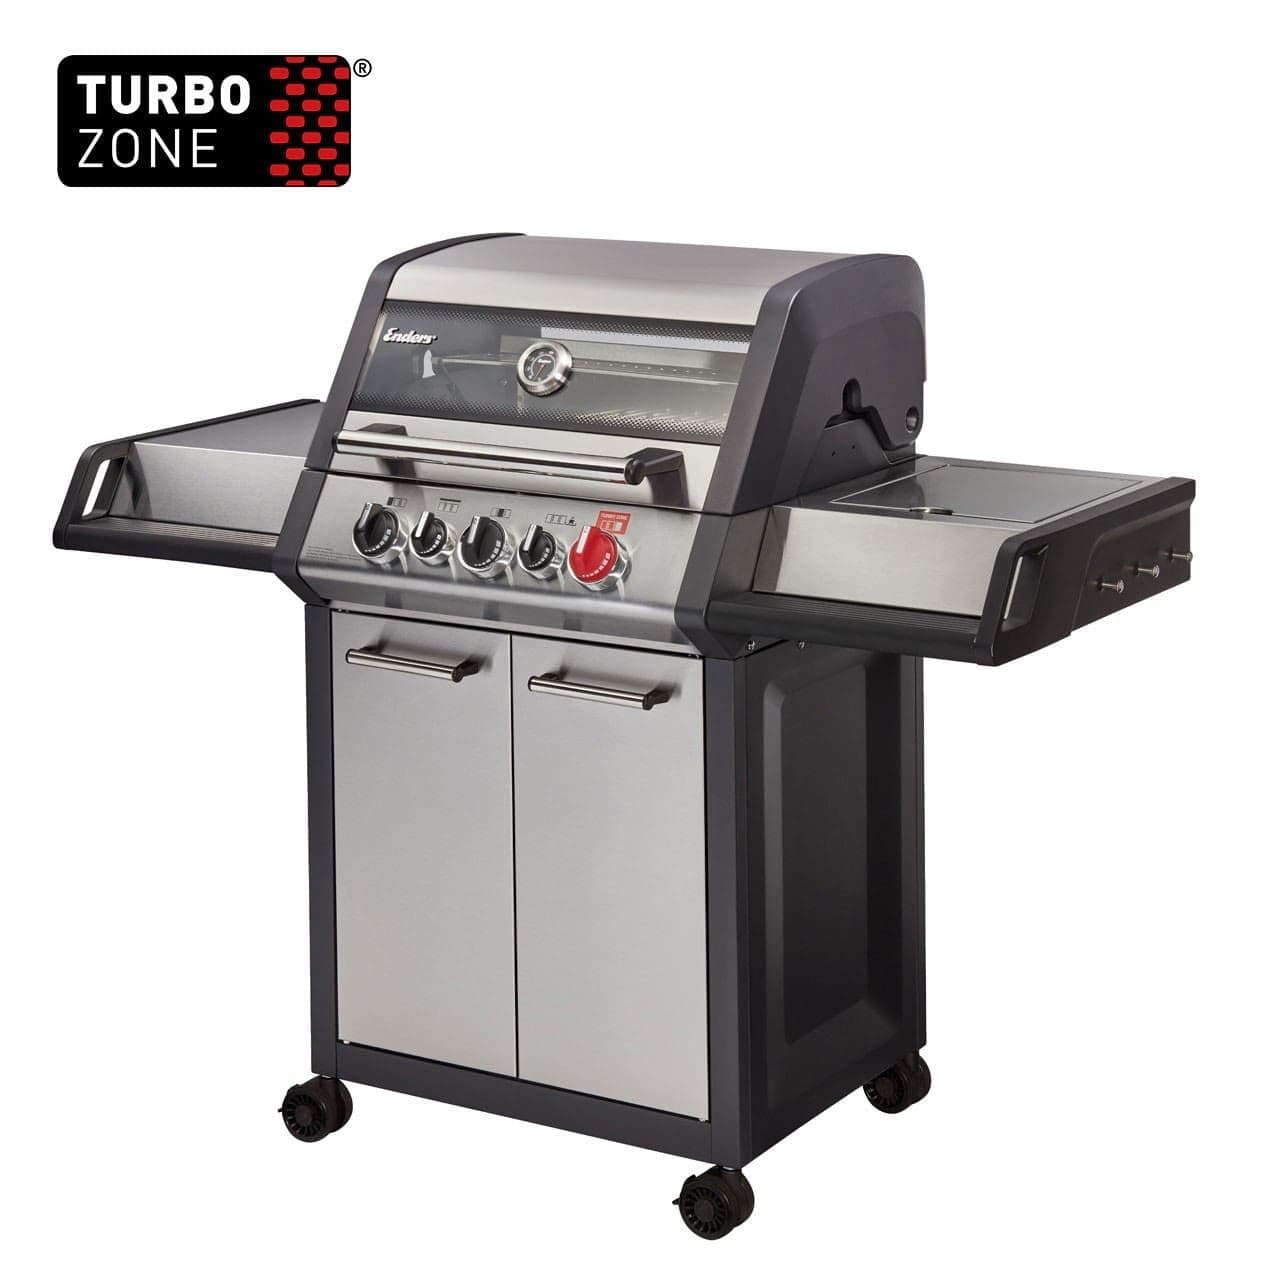 EN83766EndersÂ® Monroe Pro 3 Sik Turbo Gas Barbecue